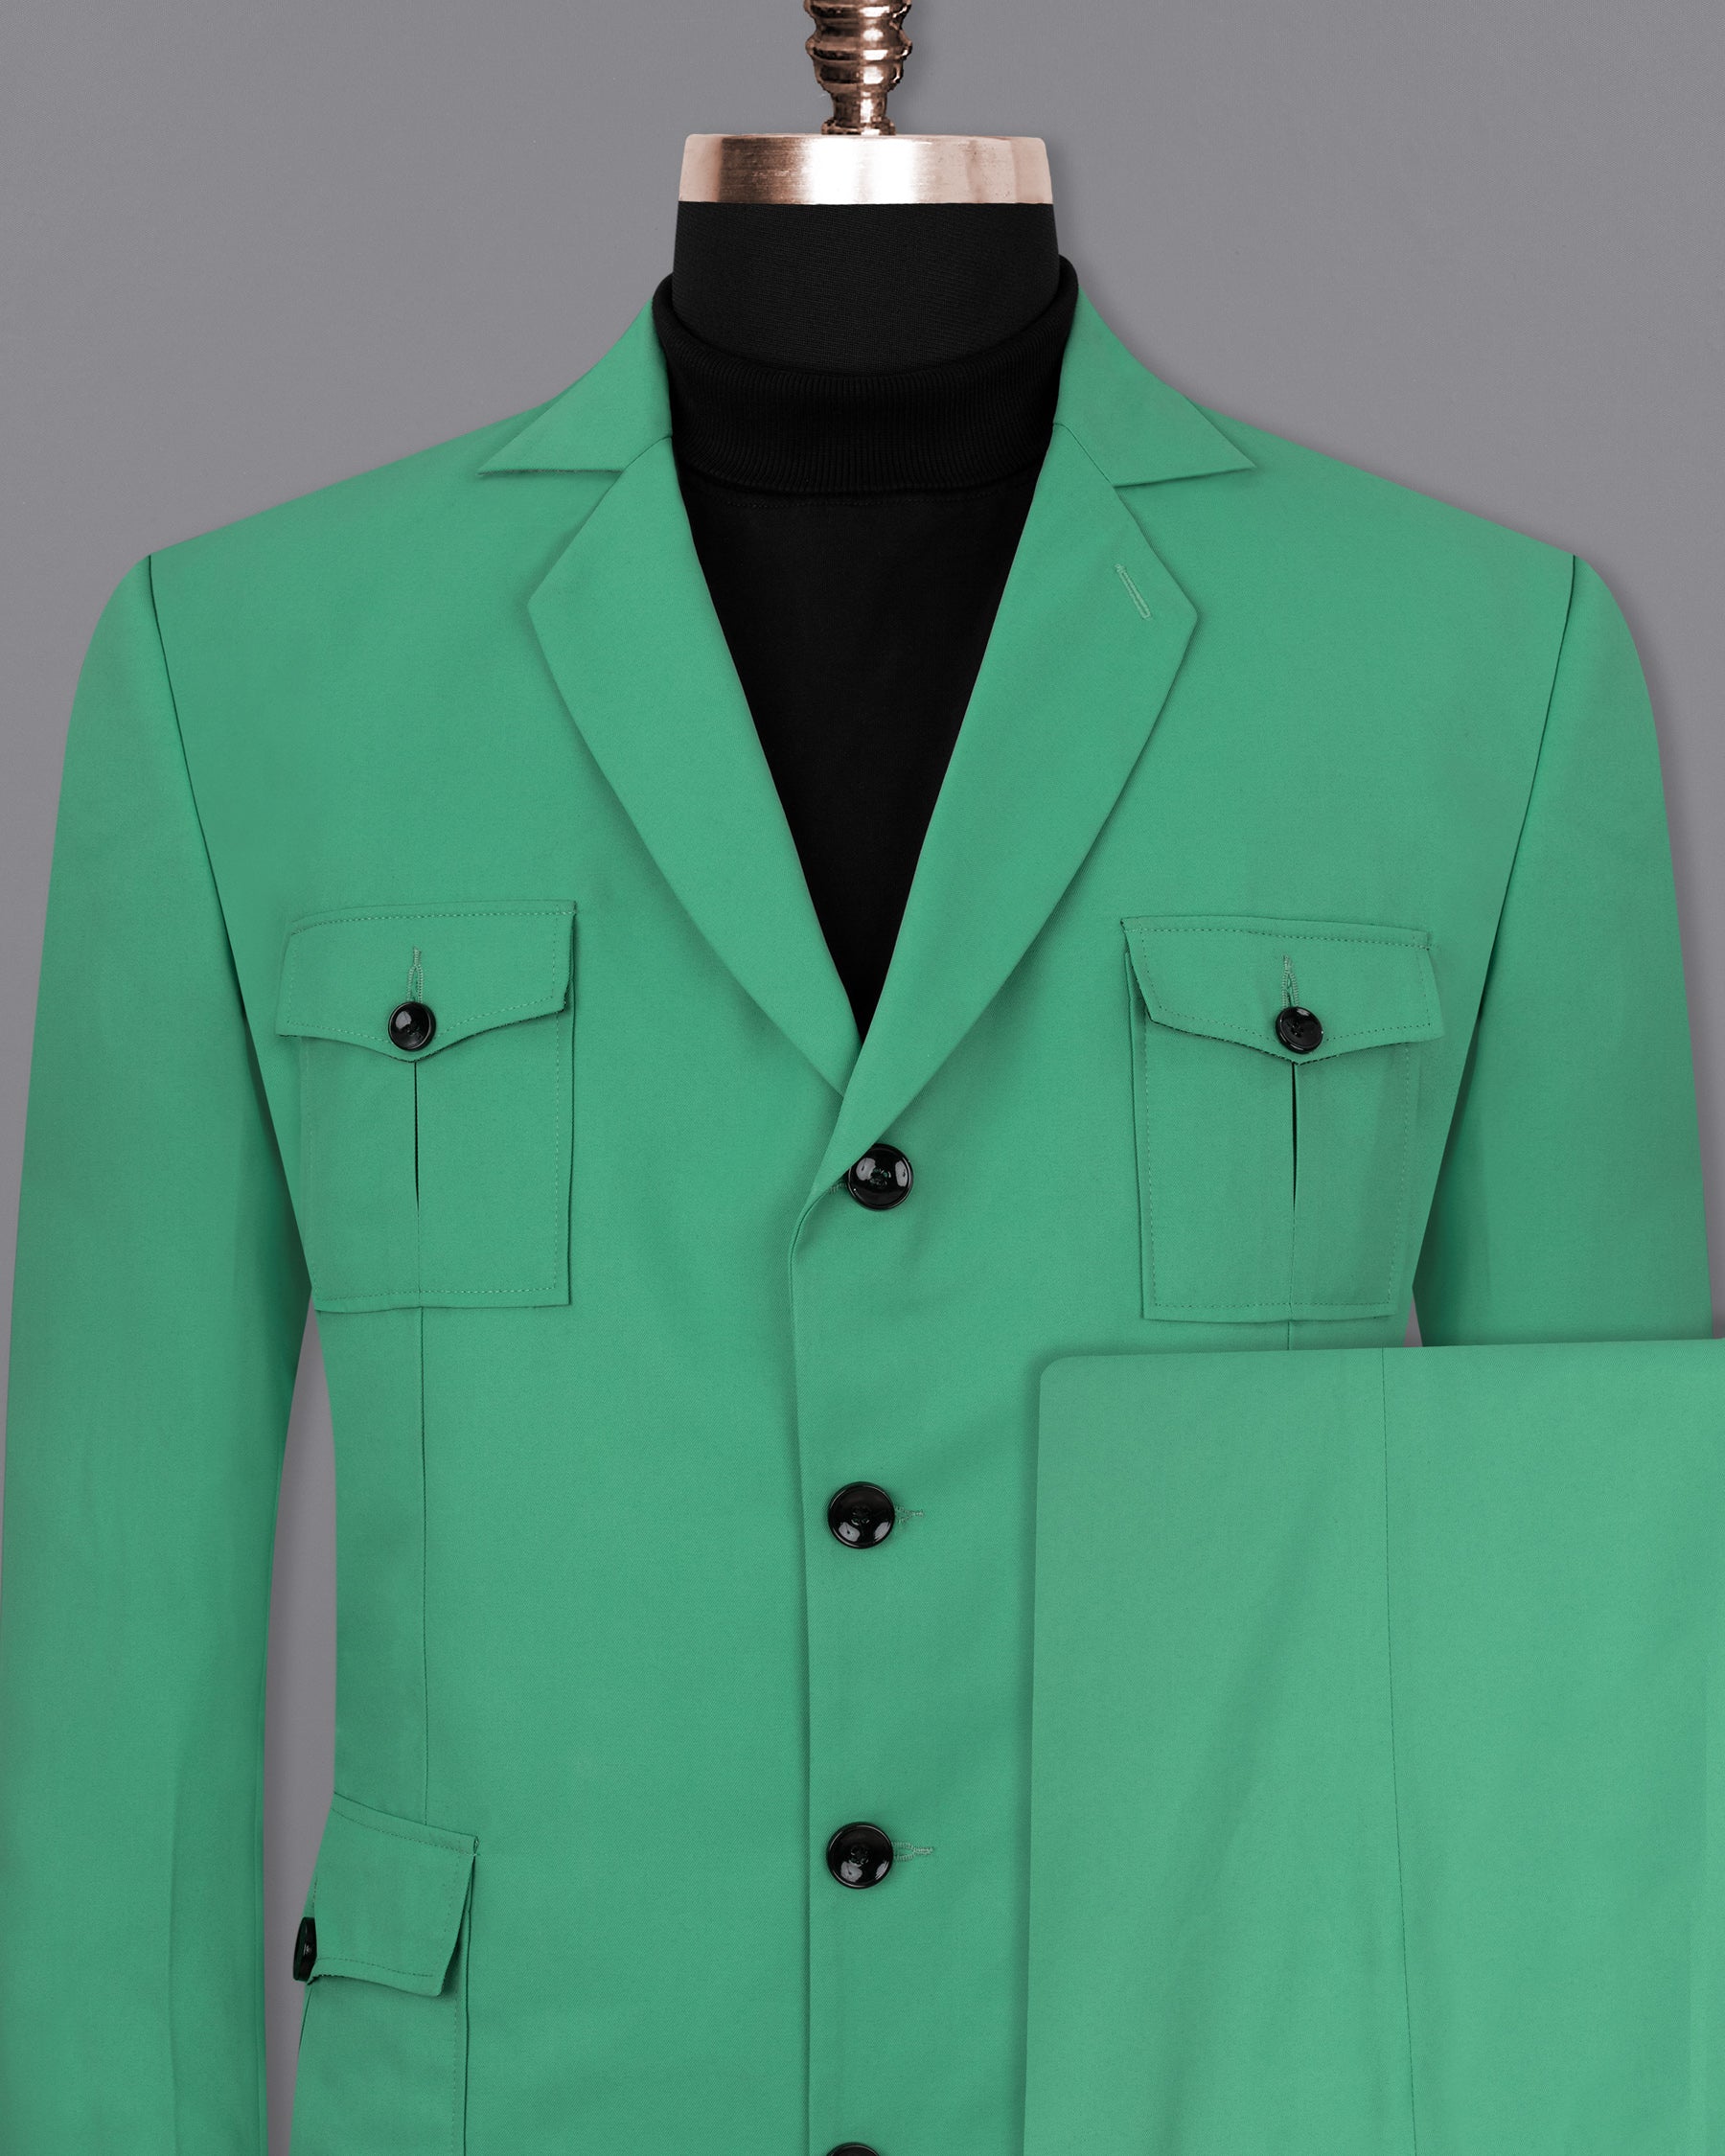 Ocean Green Designer Sports Suit